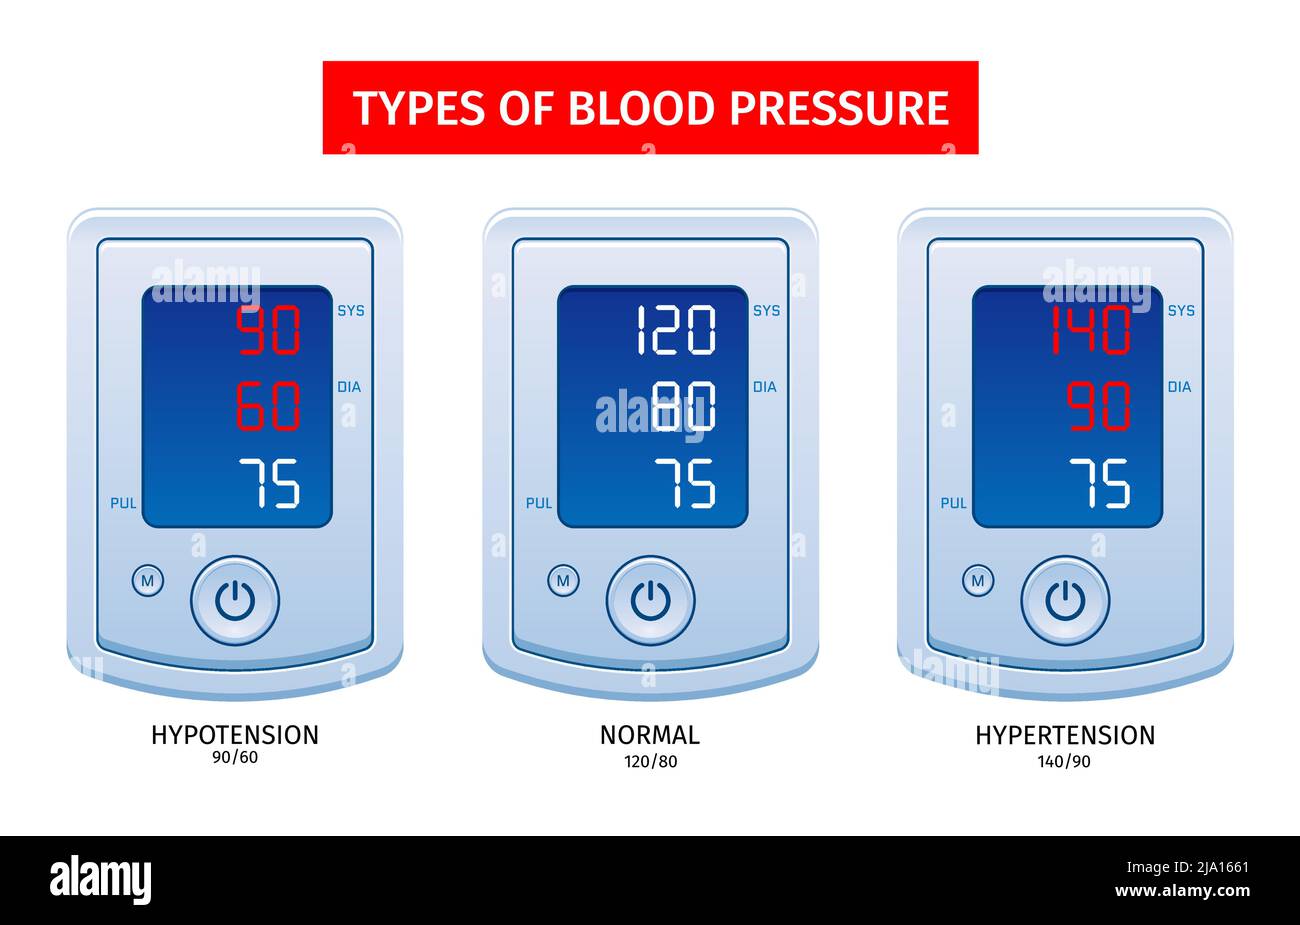 Hypertension hypotension prise en charge des résultats de mesure 3 tonomètres numériques avec types de pression artérielle illustration réaliste du vecteur Illustration de Vecteur